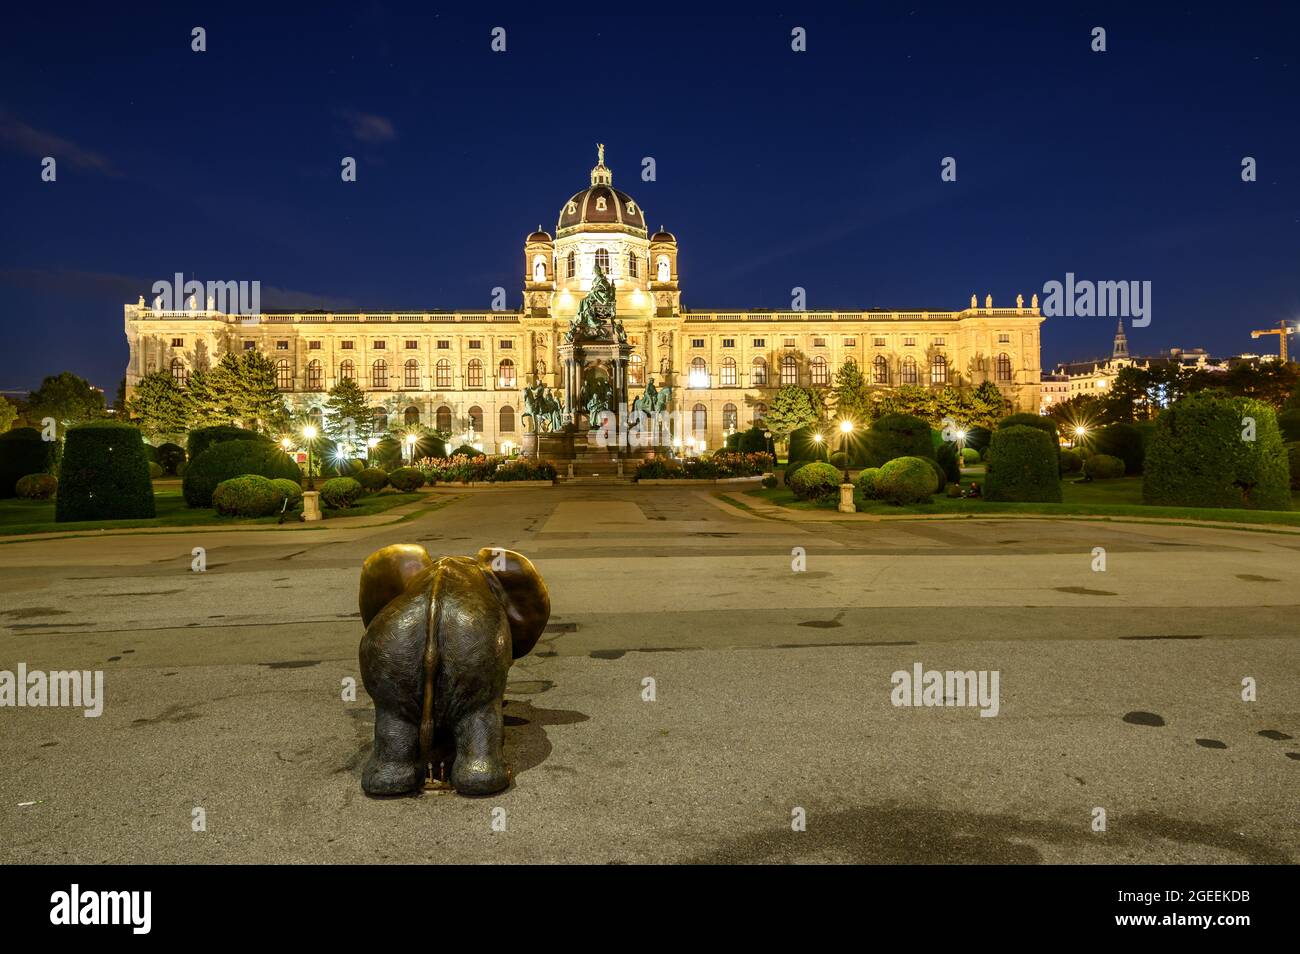 El Kunsthistorisches Museum es un museo de arte situado en Maria Theresa Platz en Viena, Austria. Foto de stock